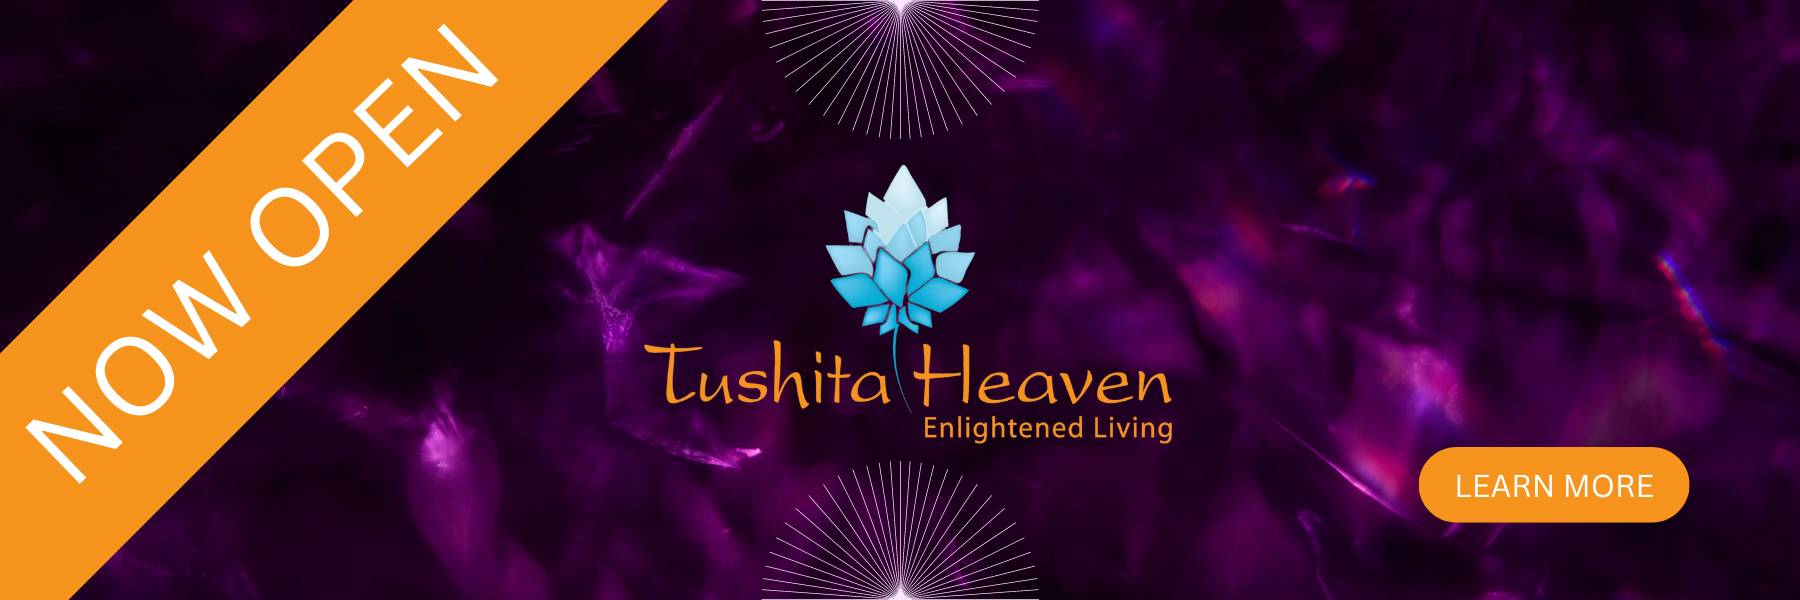 Tushita Heaven